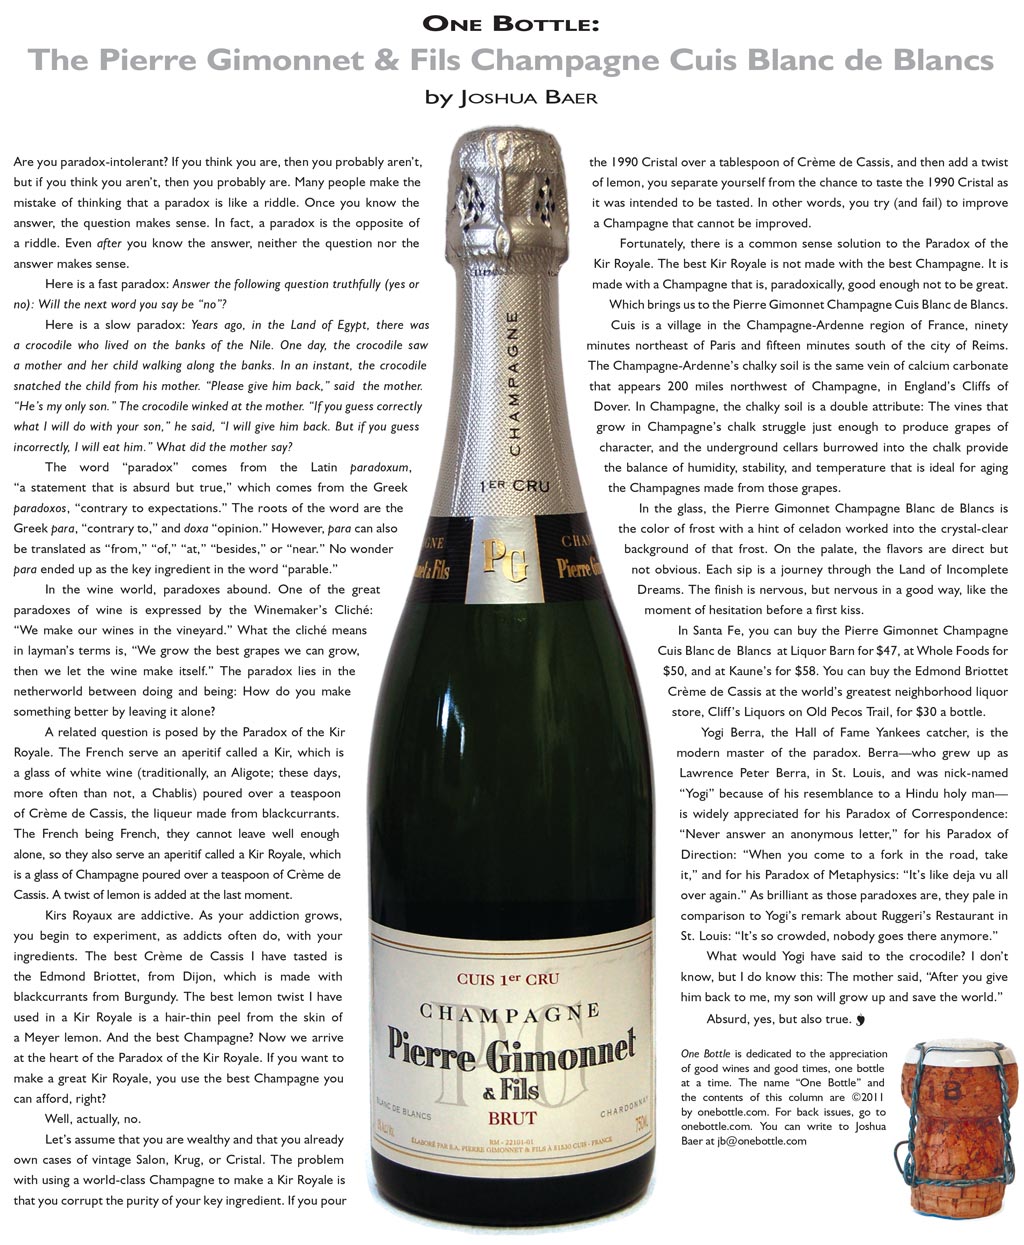 Pierre Gimonnet & Fils Champagne Cuis Blanc de Blancs